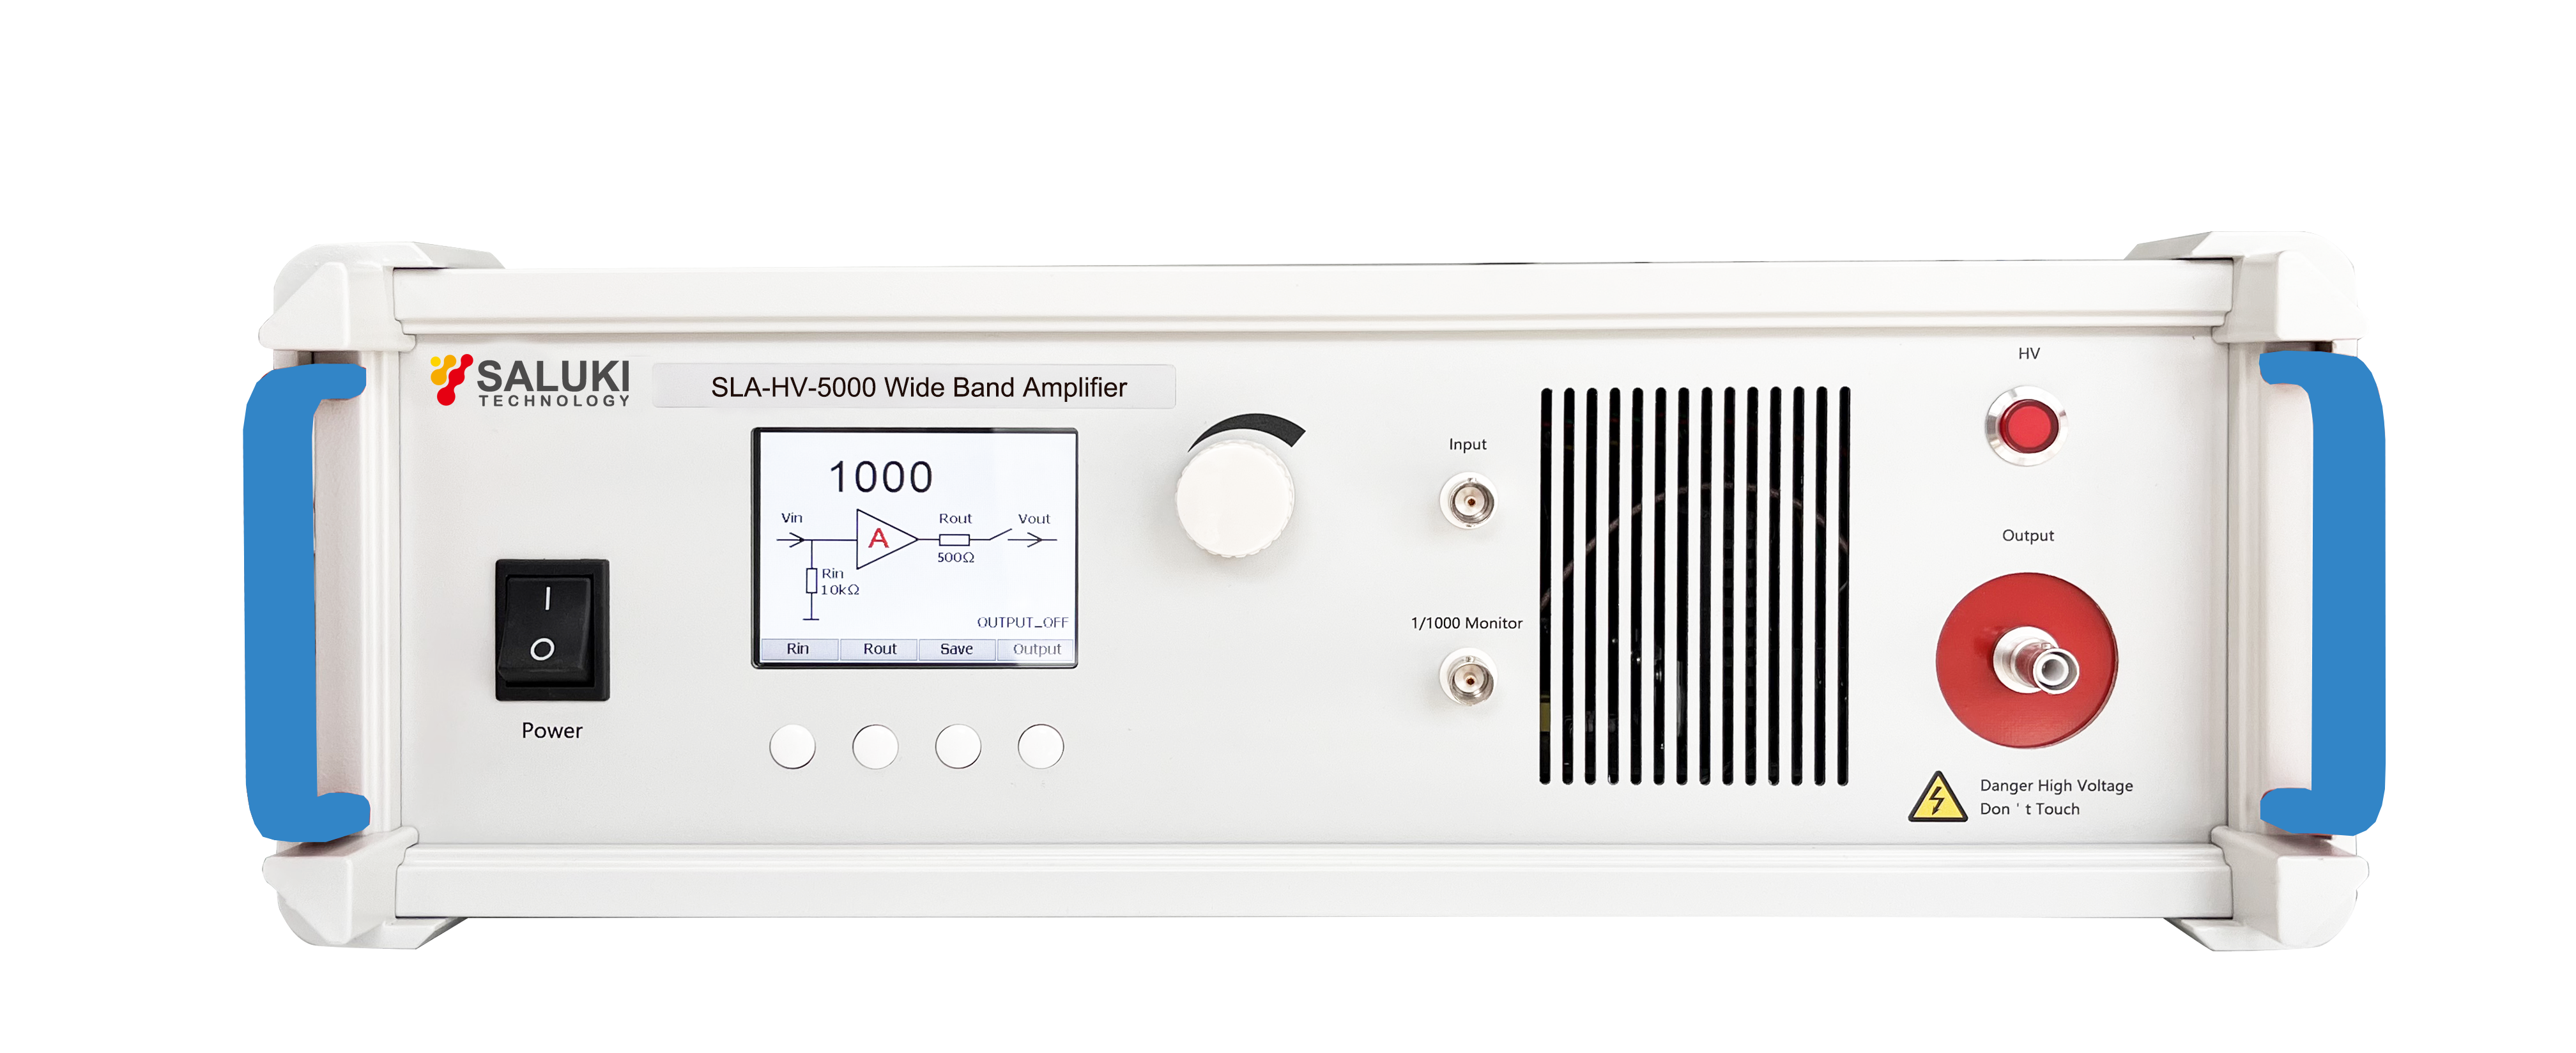 SLA-HV-5000 High Voltage Amplifier